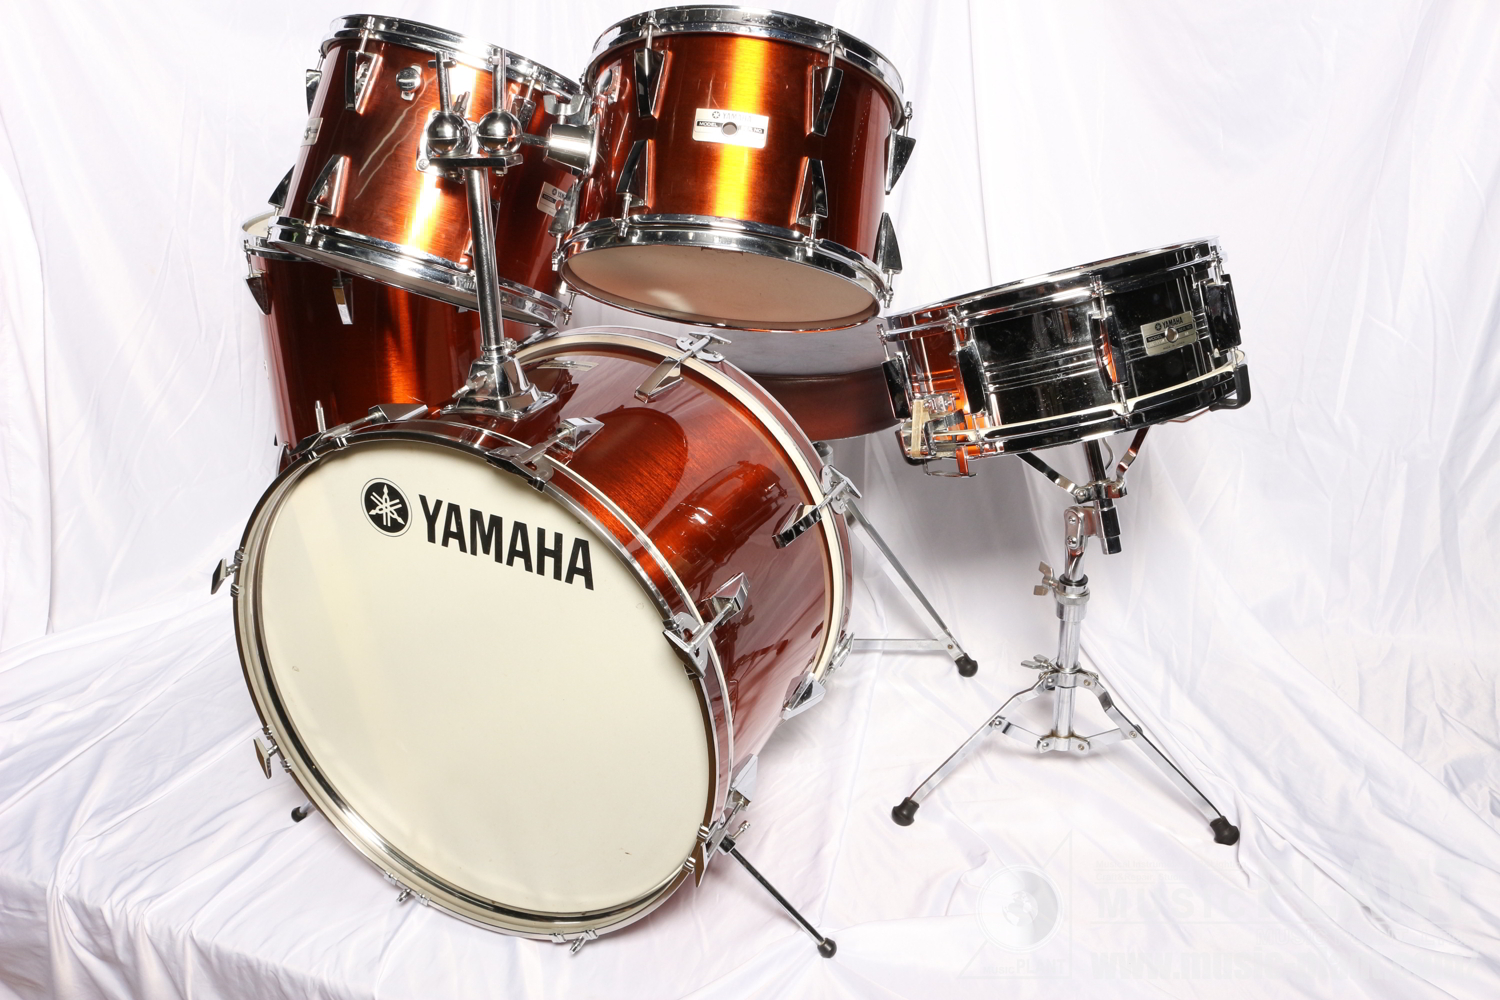 YAMAHA ドラムセットYD-5000 Series Drum Set中古在庫あります! MUSIC PLANT WEBSHOP